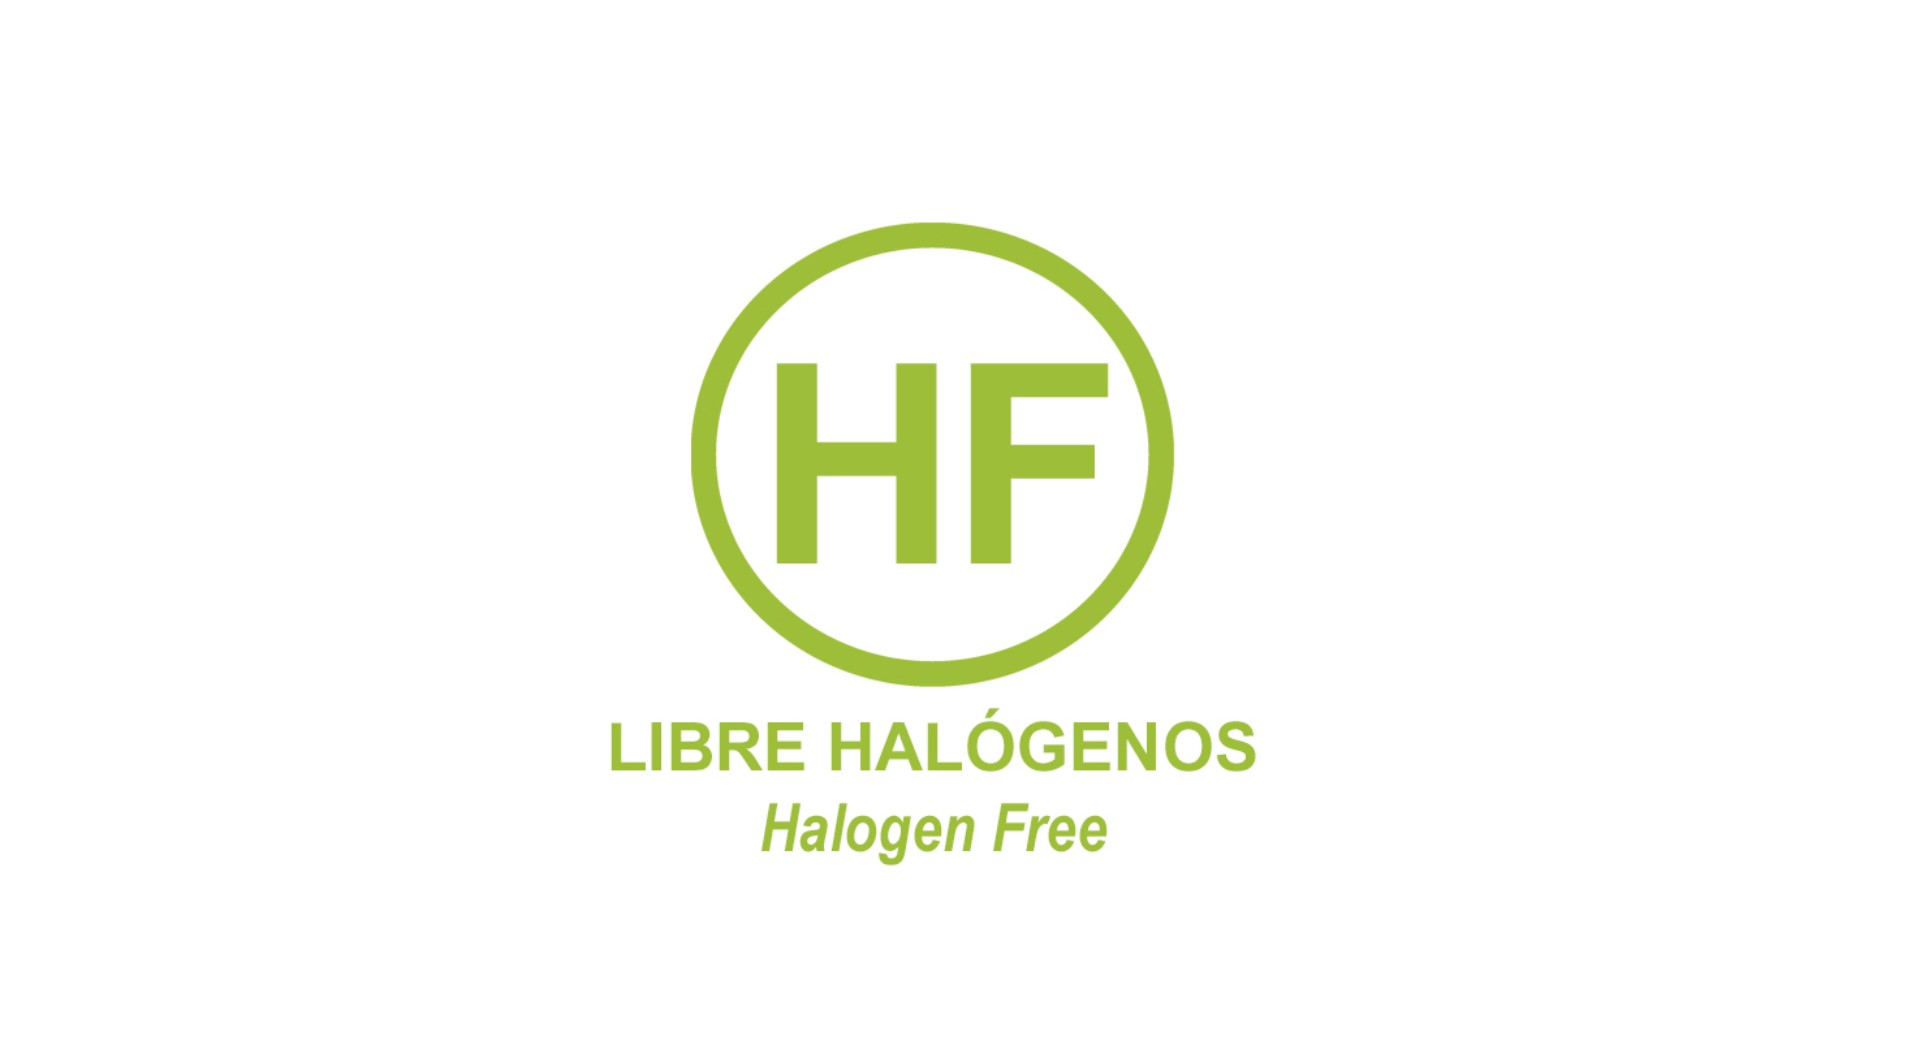 La importancia de fabricar con compuestos libre de halógenos